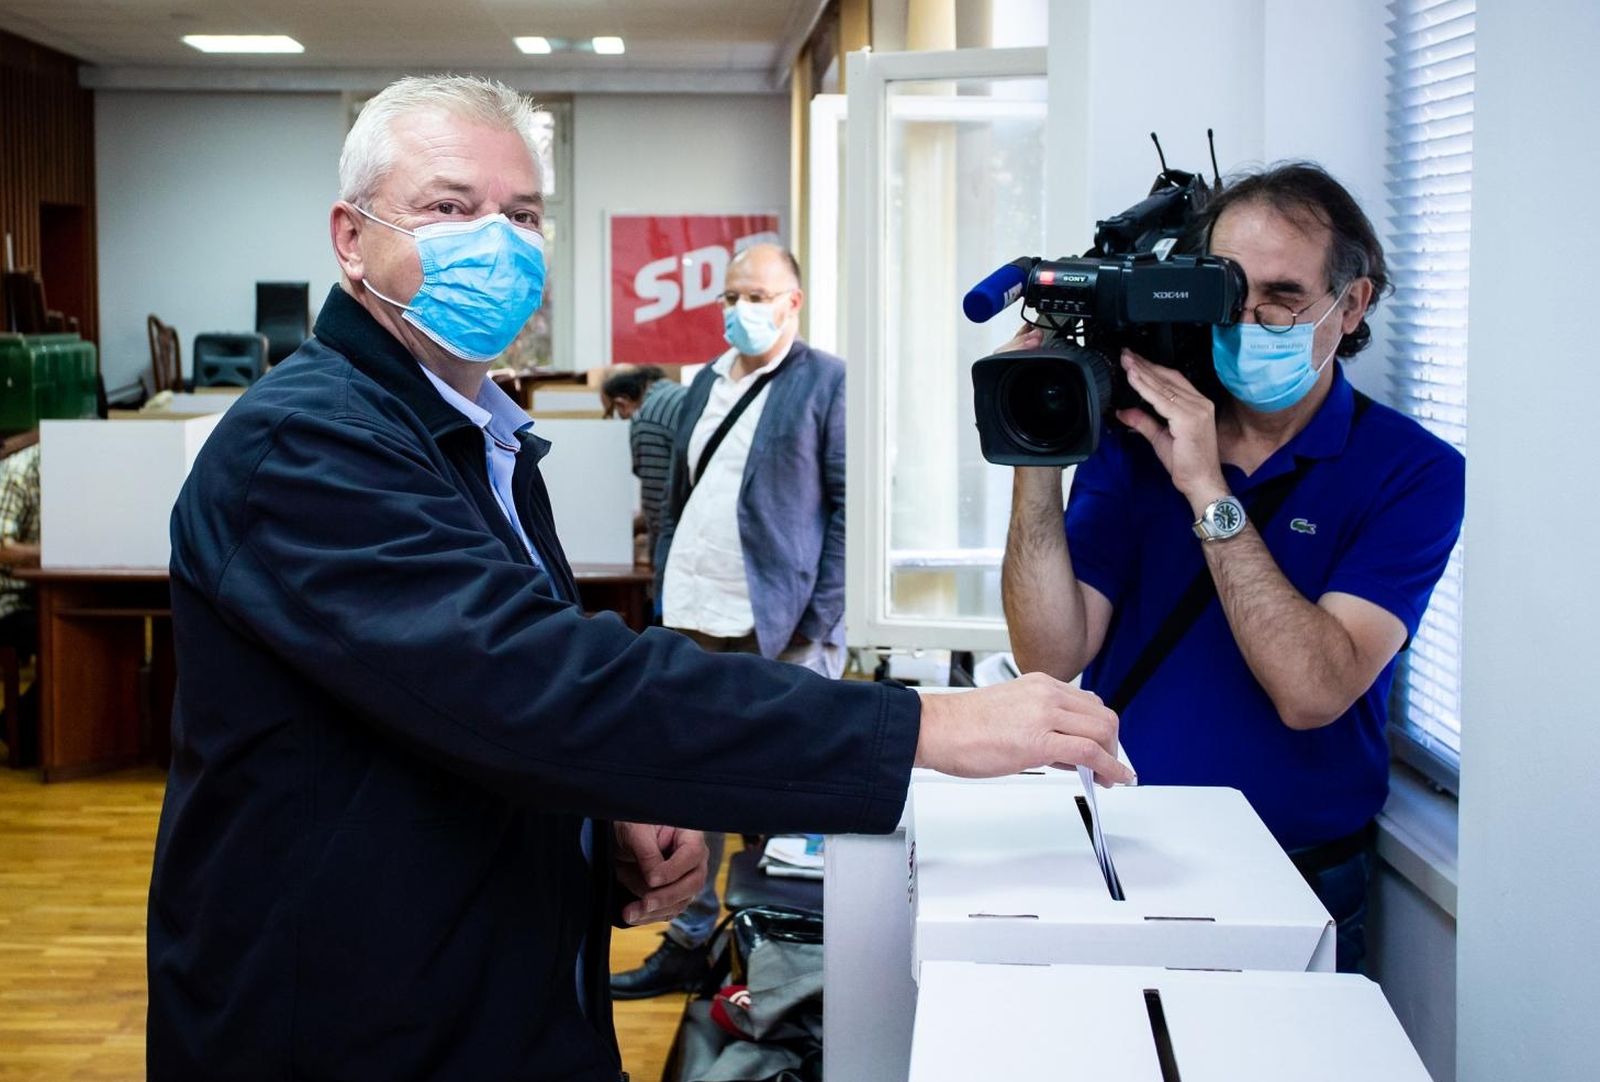 26.09.2020., Split - Kandidat za predsjednika SDP-a Ranko Ostojic glasao je na unutarstranackim izborima u prostorima SDP-a u Splitu.
Photo: Milan Sabic/PIXSELL